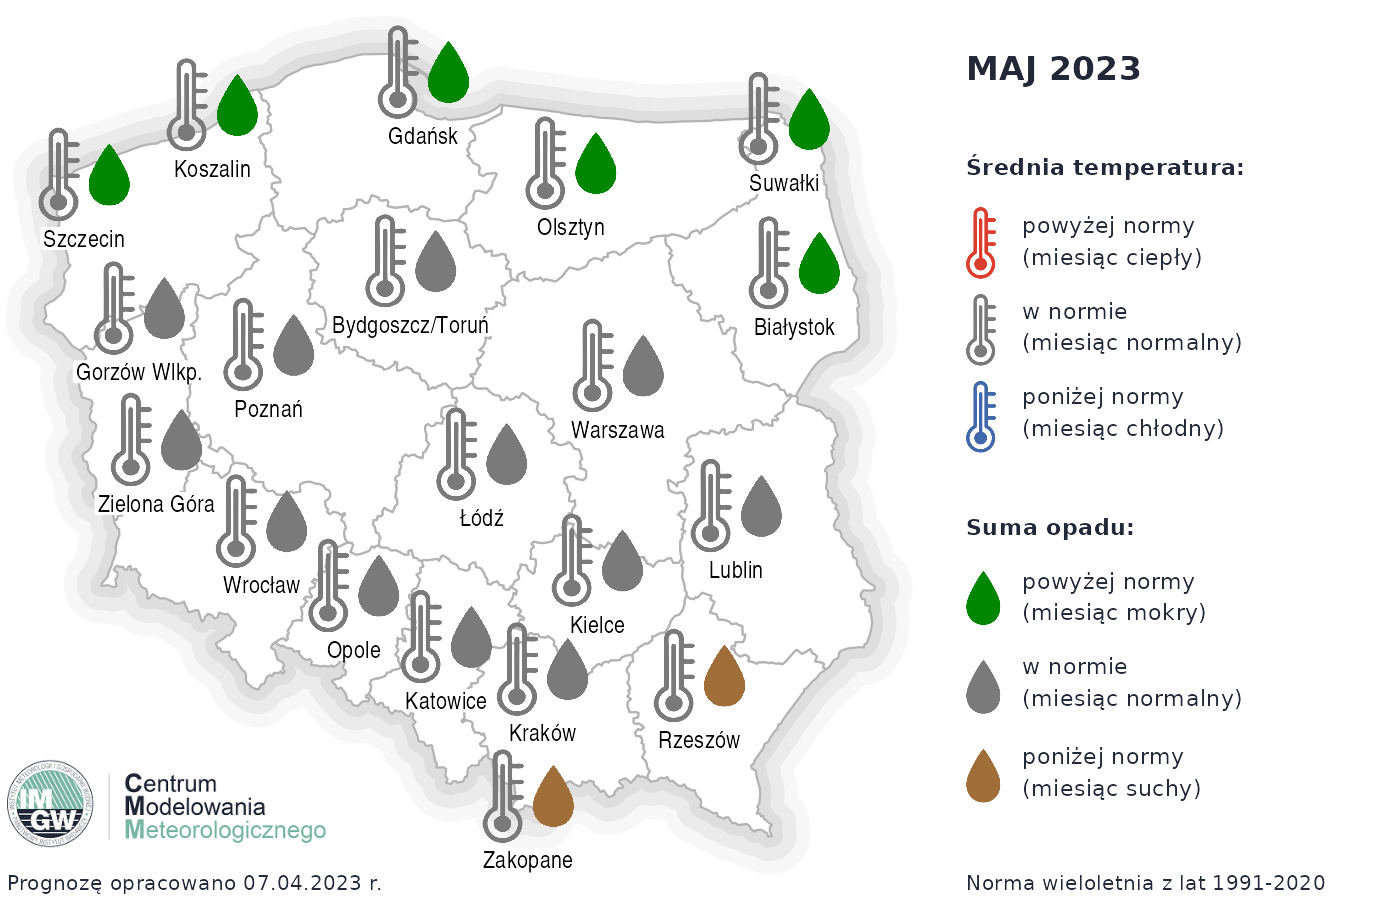 Rys. 1. Prognoza średniej miesięcznej temperatury powietrza i miesięcznej sumy opadów atmosferycznych na maj 2023 r. dla wybranych miast w Polsce